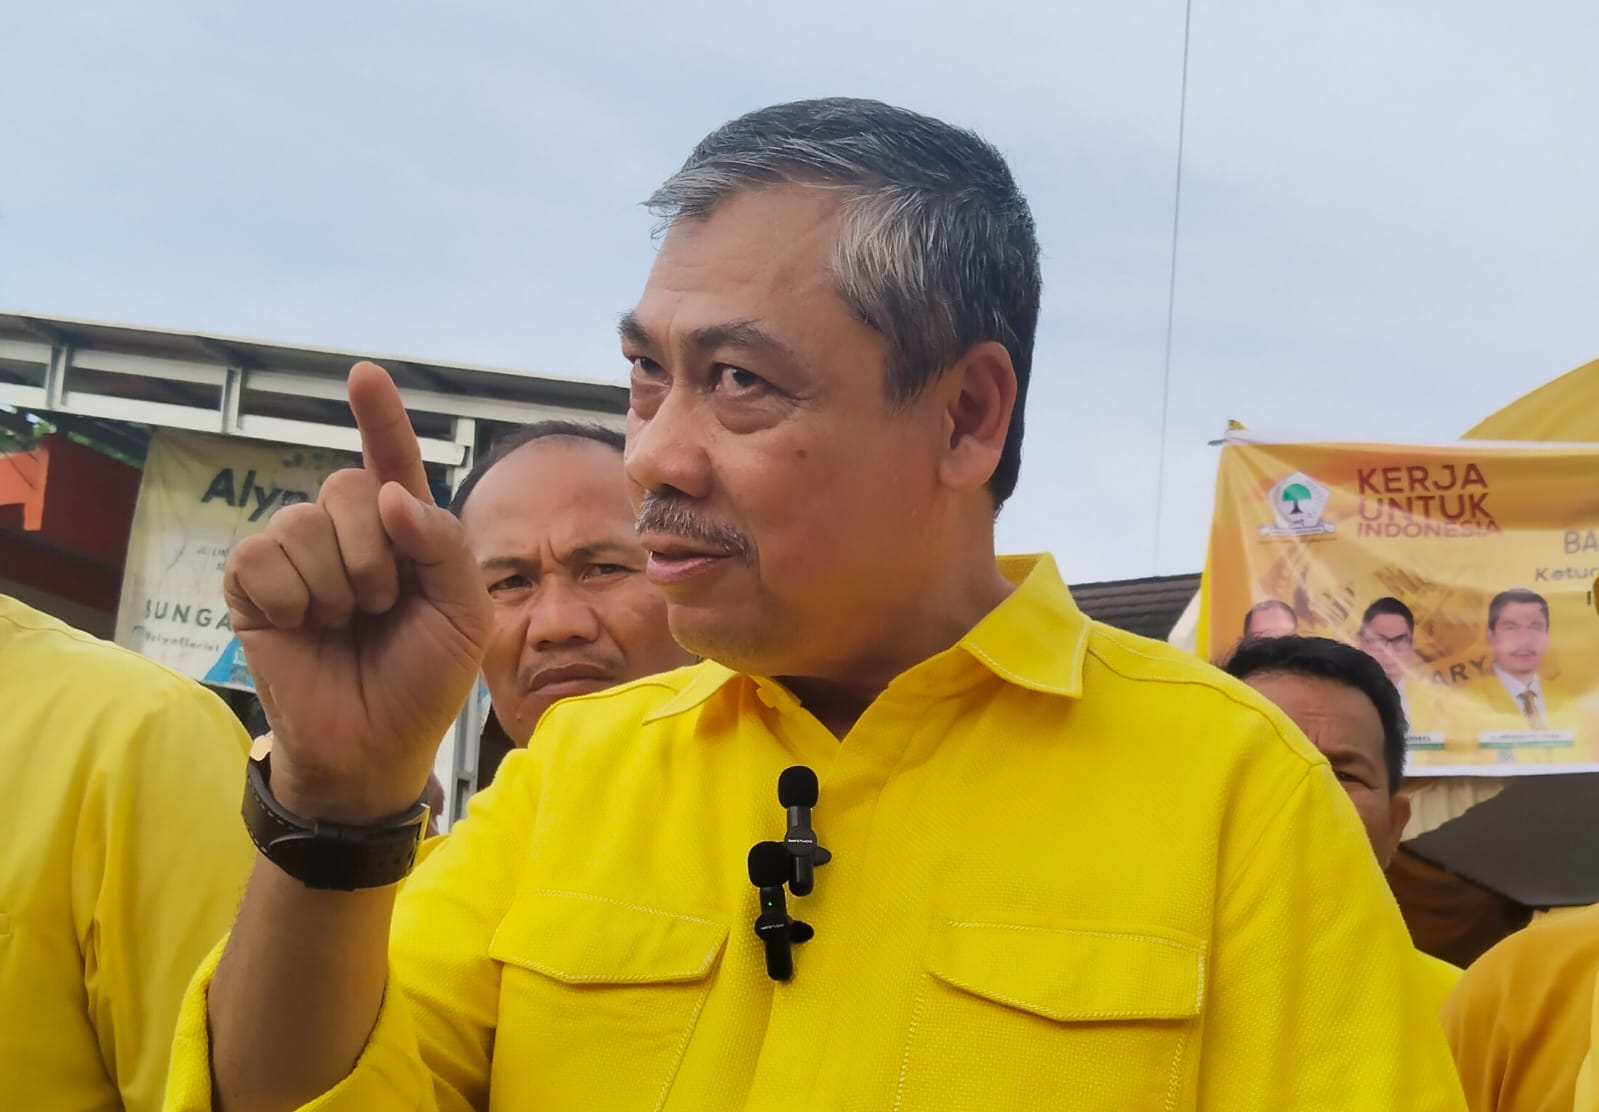 5 Anggota Fraksi DPRD Ogan Ilir Tak Hadir Saat Konsolidasi, Partai Golkar Ogan Ilir akan Tentukan Sikap